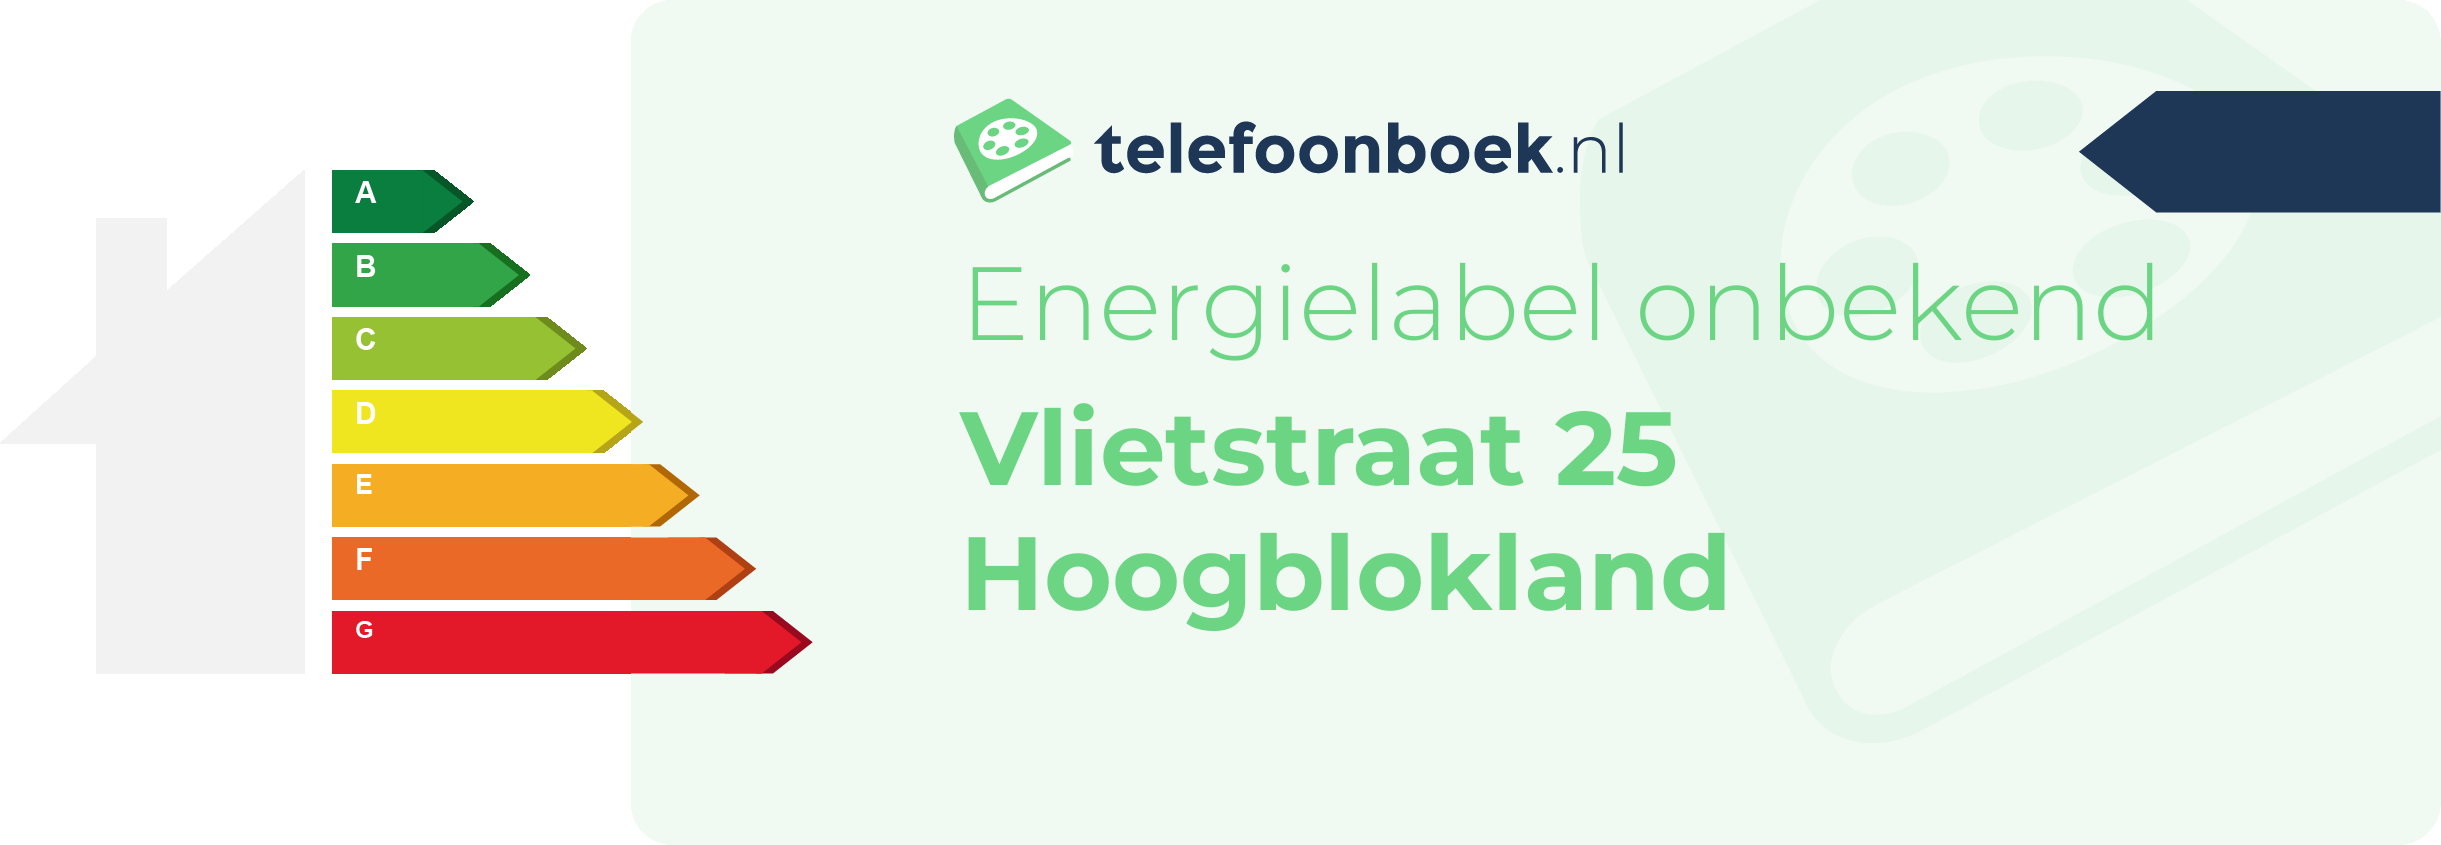 Energielabel Vlietstraat 25 Hoogblokland